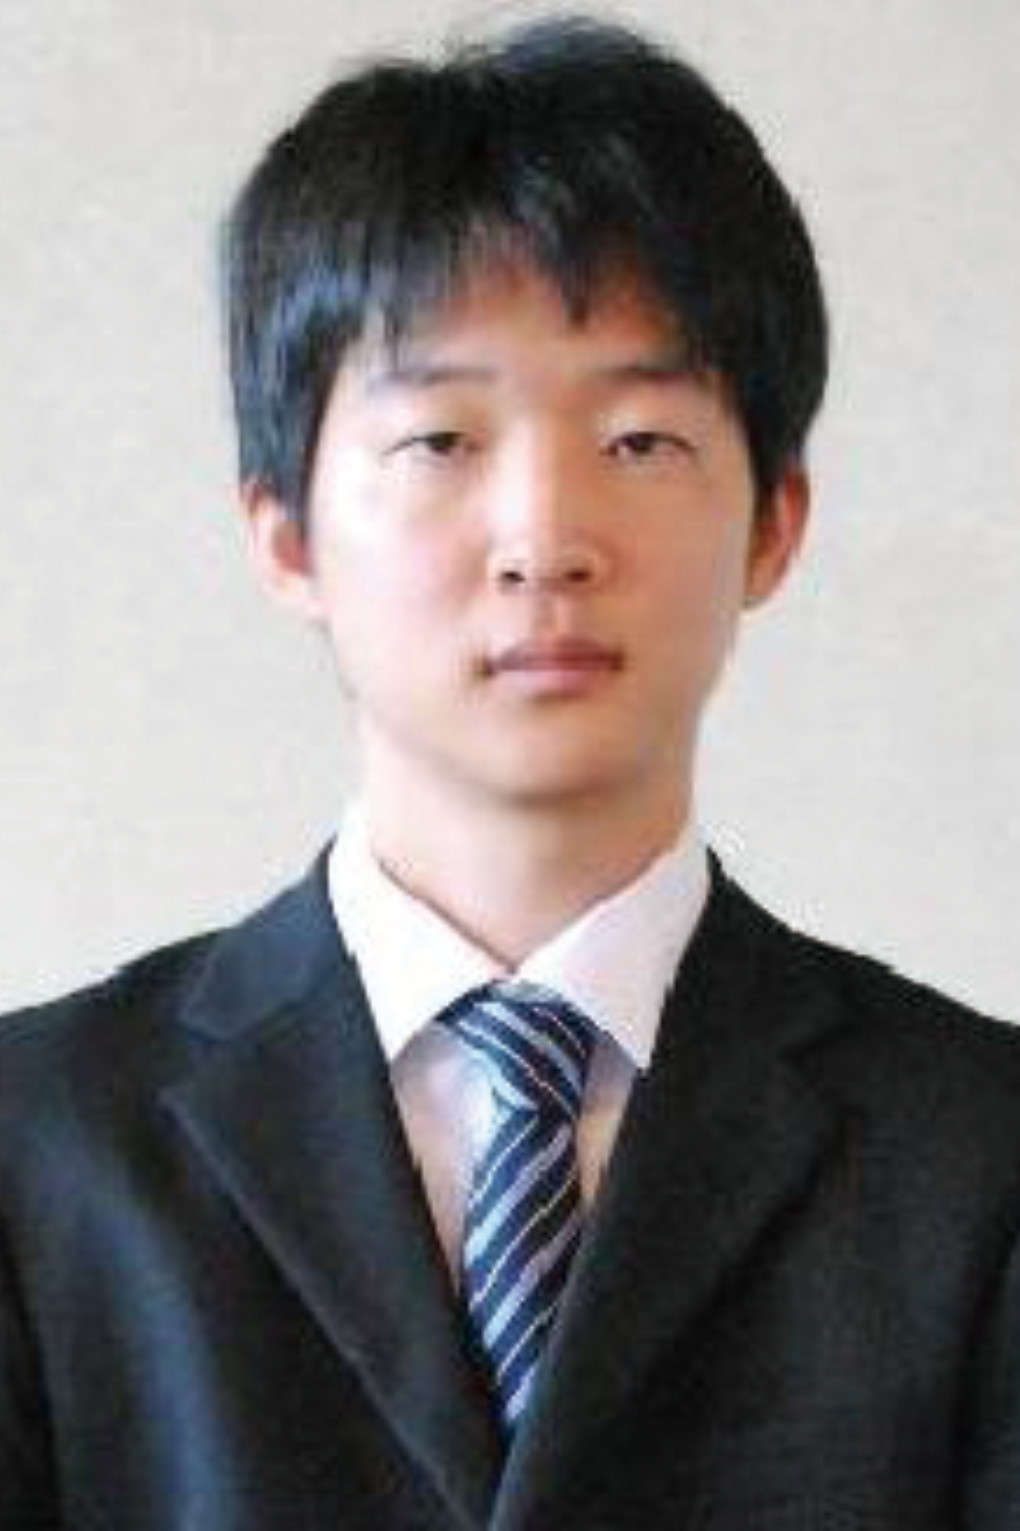 ピアニストの宮崎 翔太 氏の顔写真